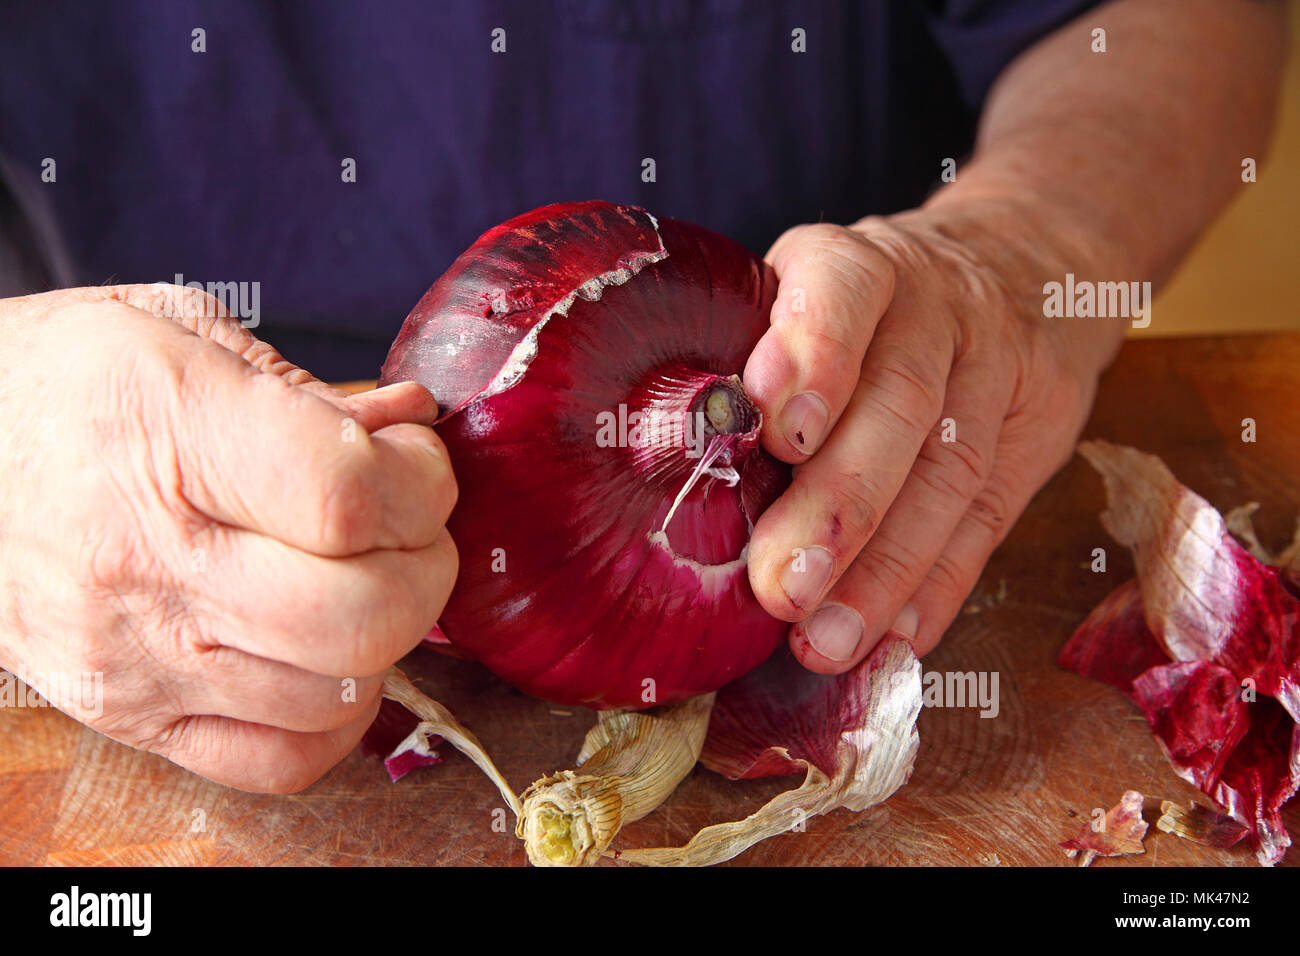 Un homme l'épluchage de la peau externe rugueux d'un gros oignon rouge Banque D'Images